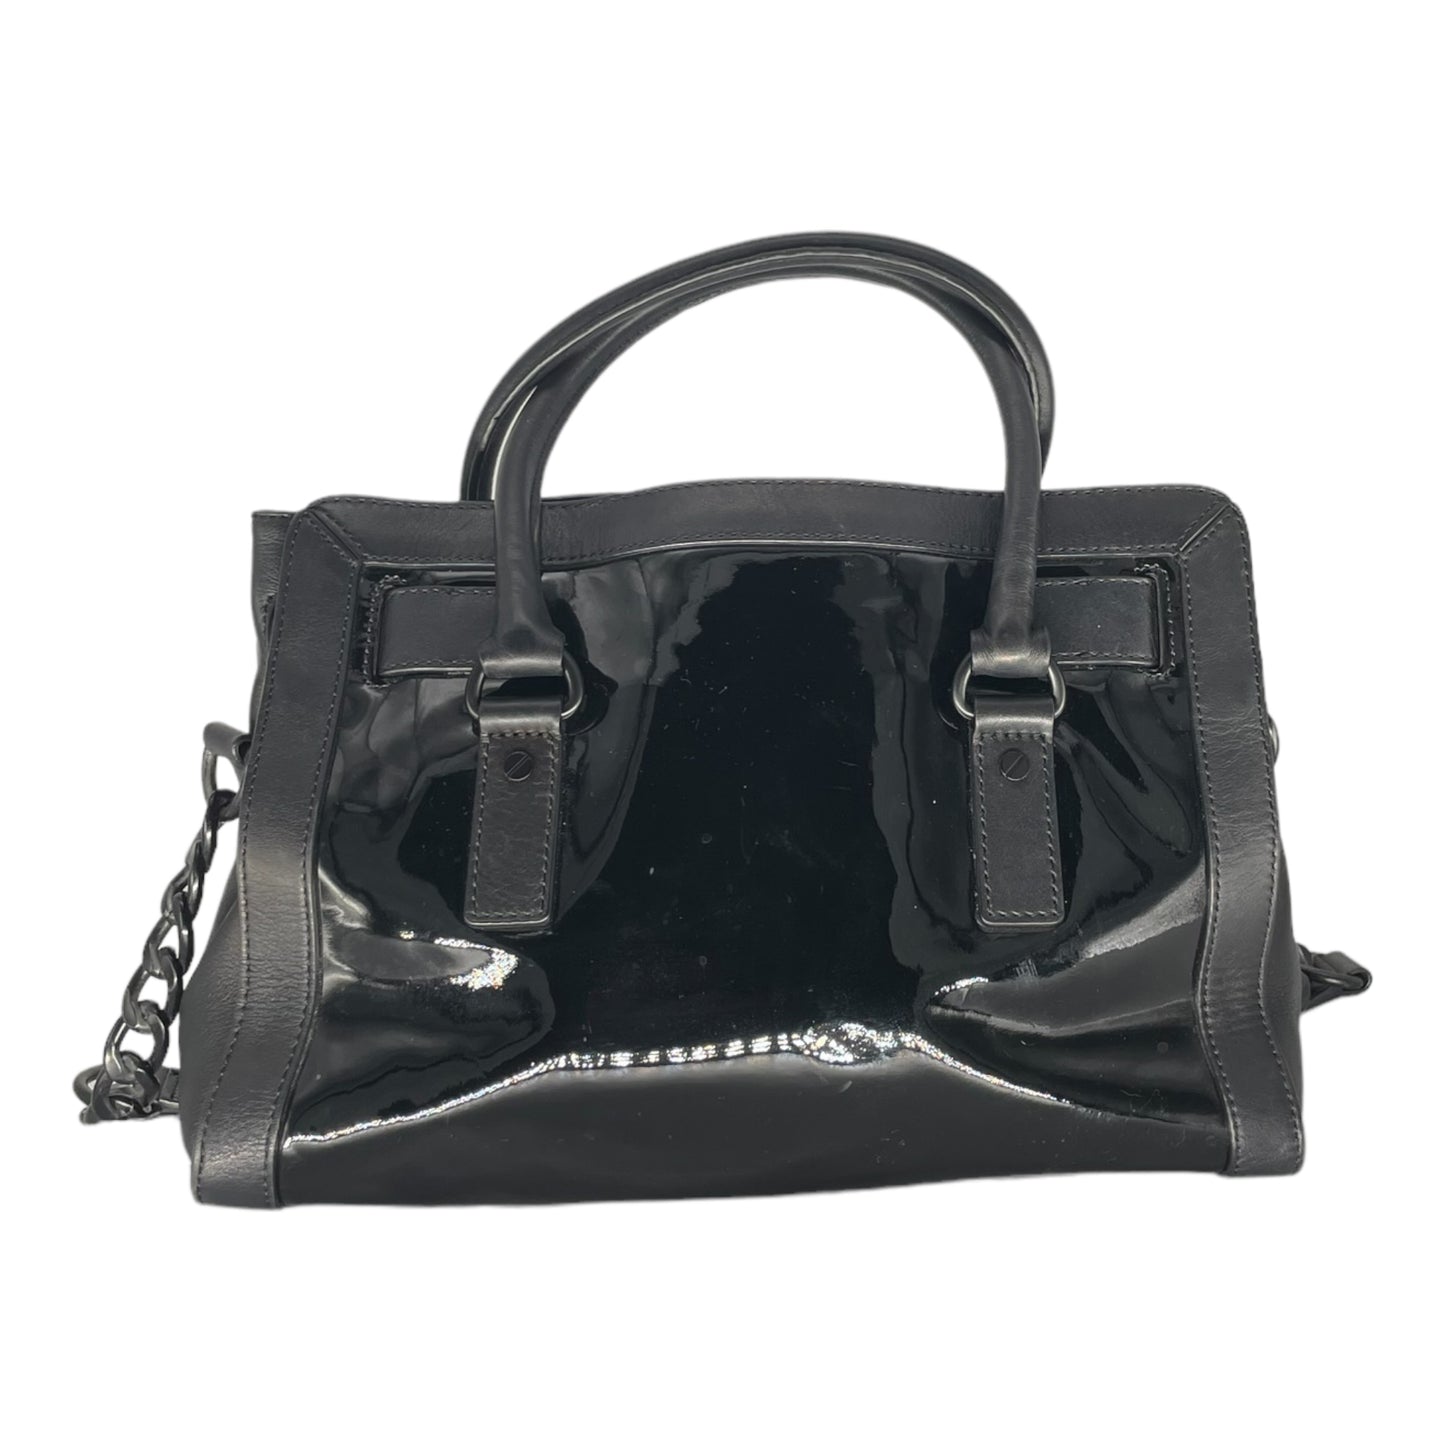 Michael Kors Hamilton Patent Leather Satchel Bag